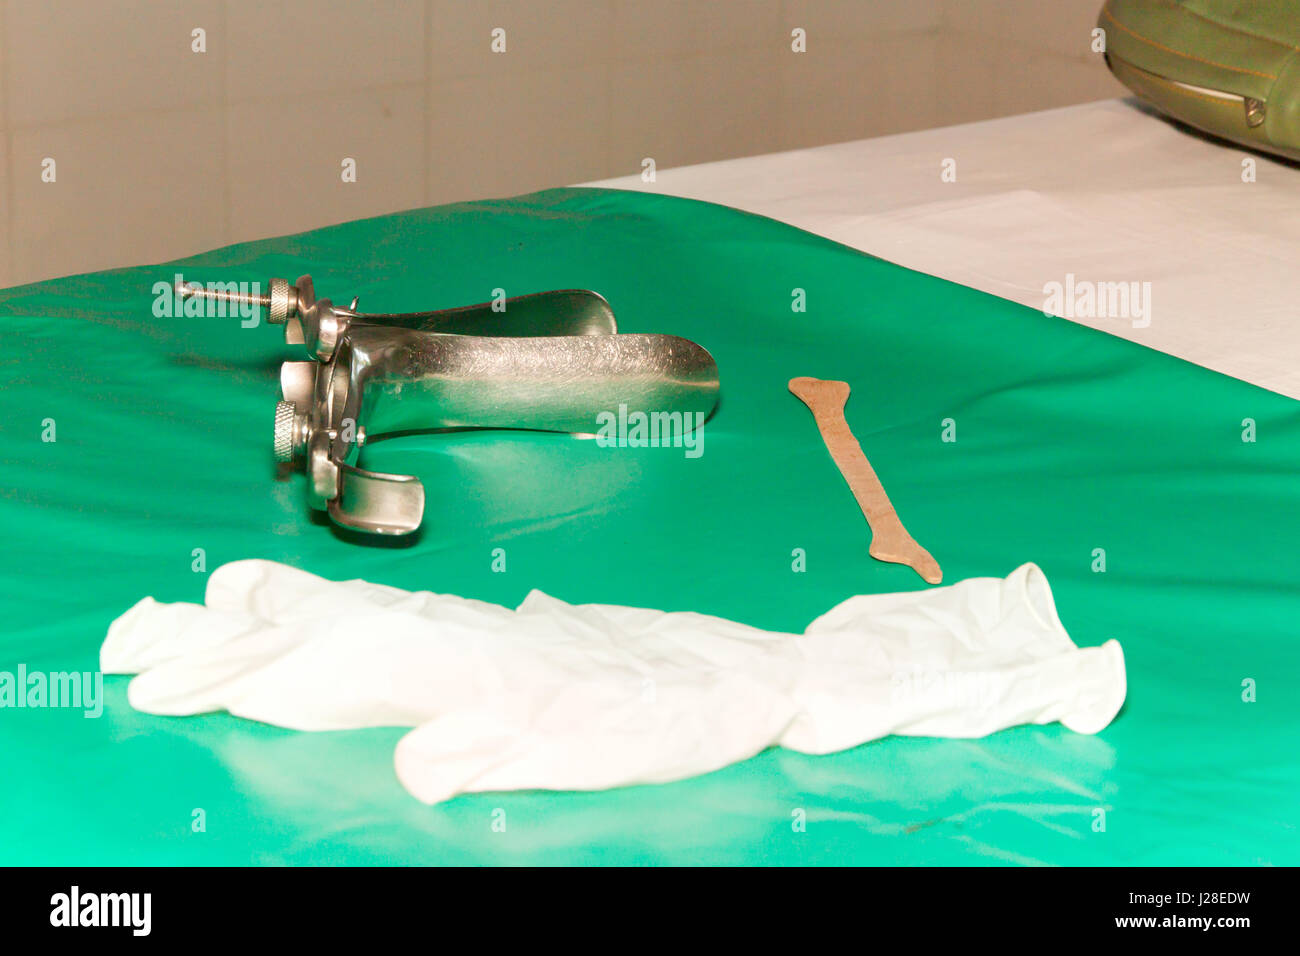 Colposcop, spatule et gants médicaux sur une couverture verte de l'équipement propre (spéculum vaginal) pour (frottis de Pap) gynécologie inspection du col de l'examen ca Banque D'Images